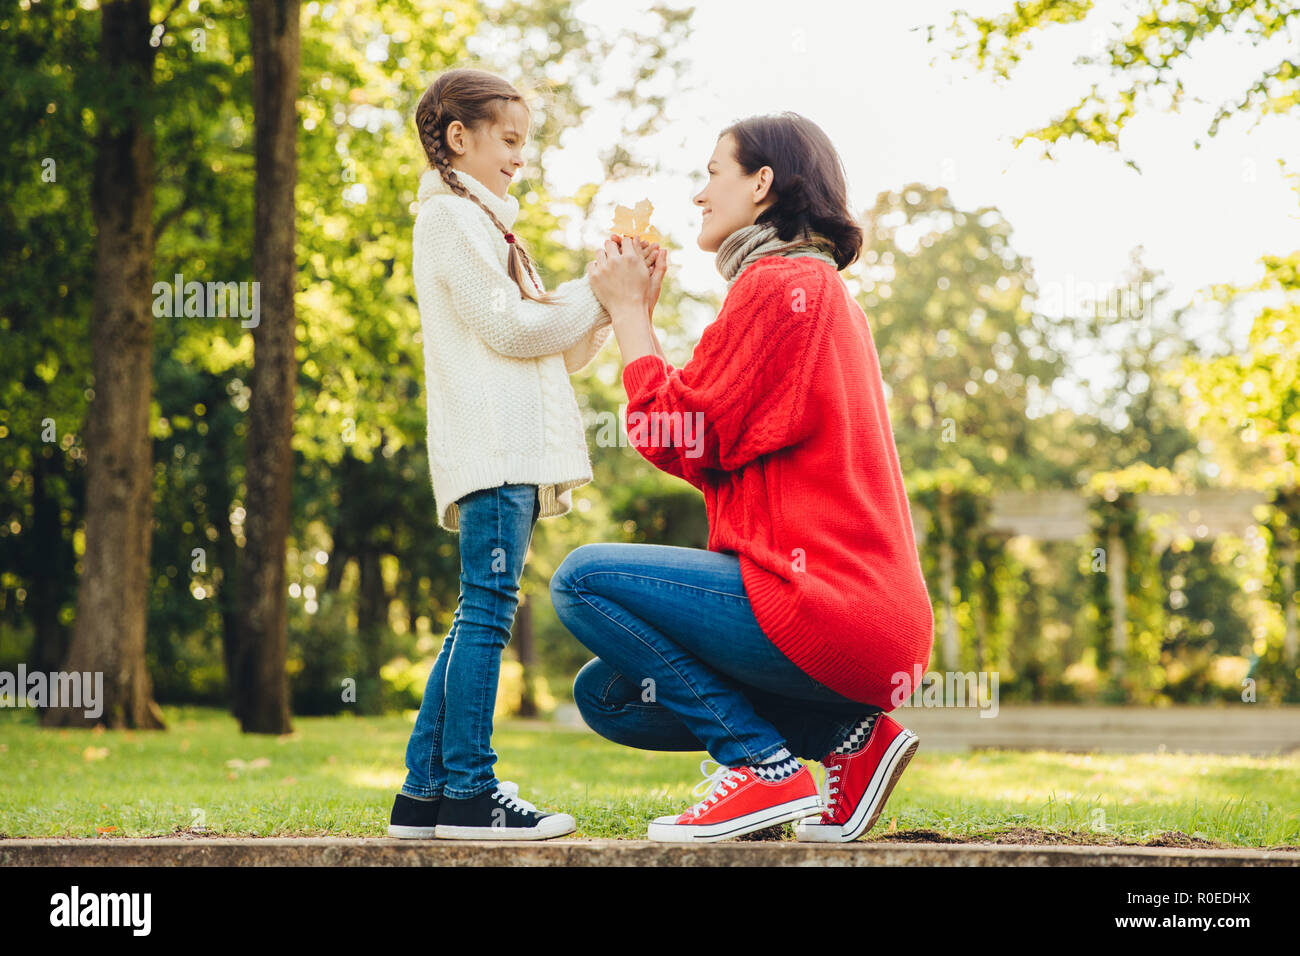 Jeune mère en tricot chaud chandail rouge joue avec sa petite fille dans le parc, lui donne sa feuille, profiter du beau temps d'automne. Maman affectueuse et littl Banque D'Images